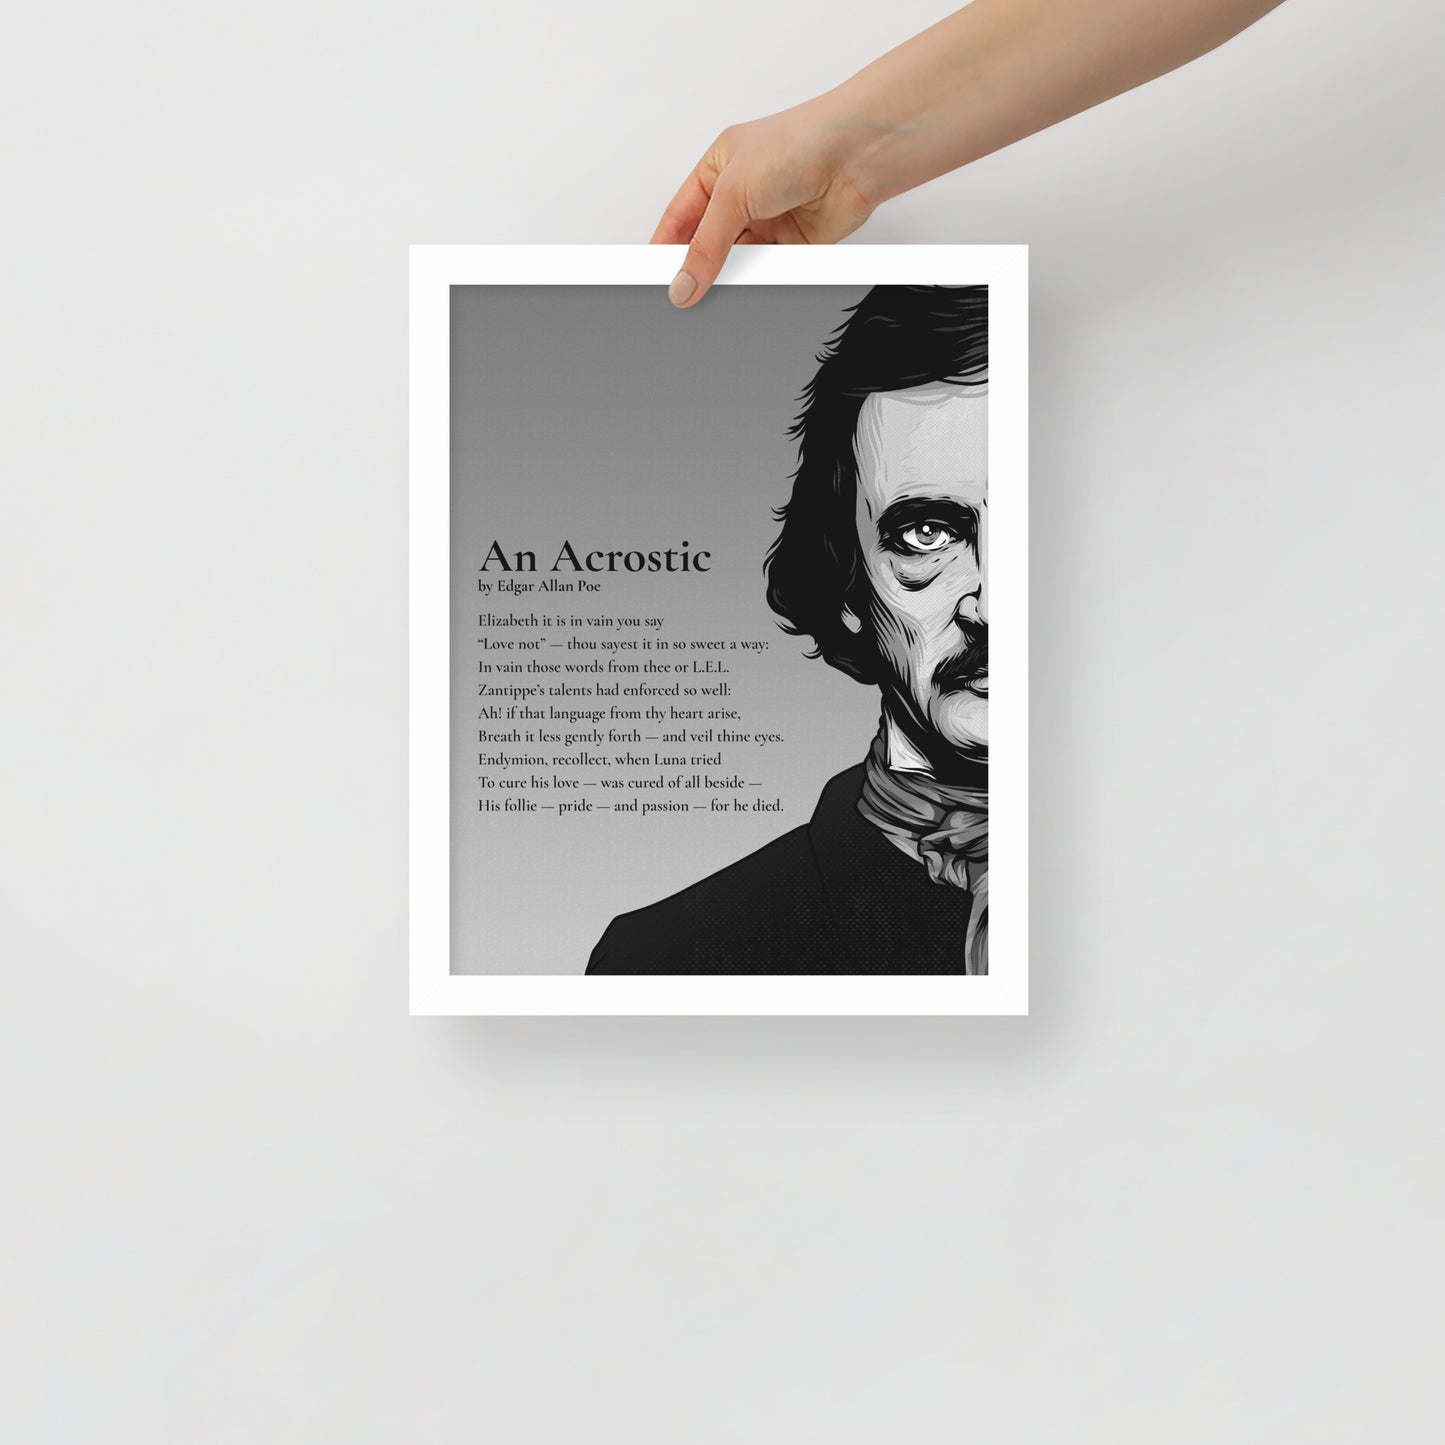 Edgar Allan Poe's 'An Acrostic' Framed Matted Poster - 11 x 14 White Frame